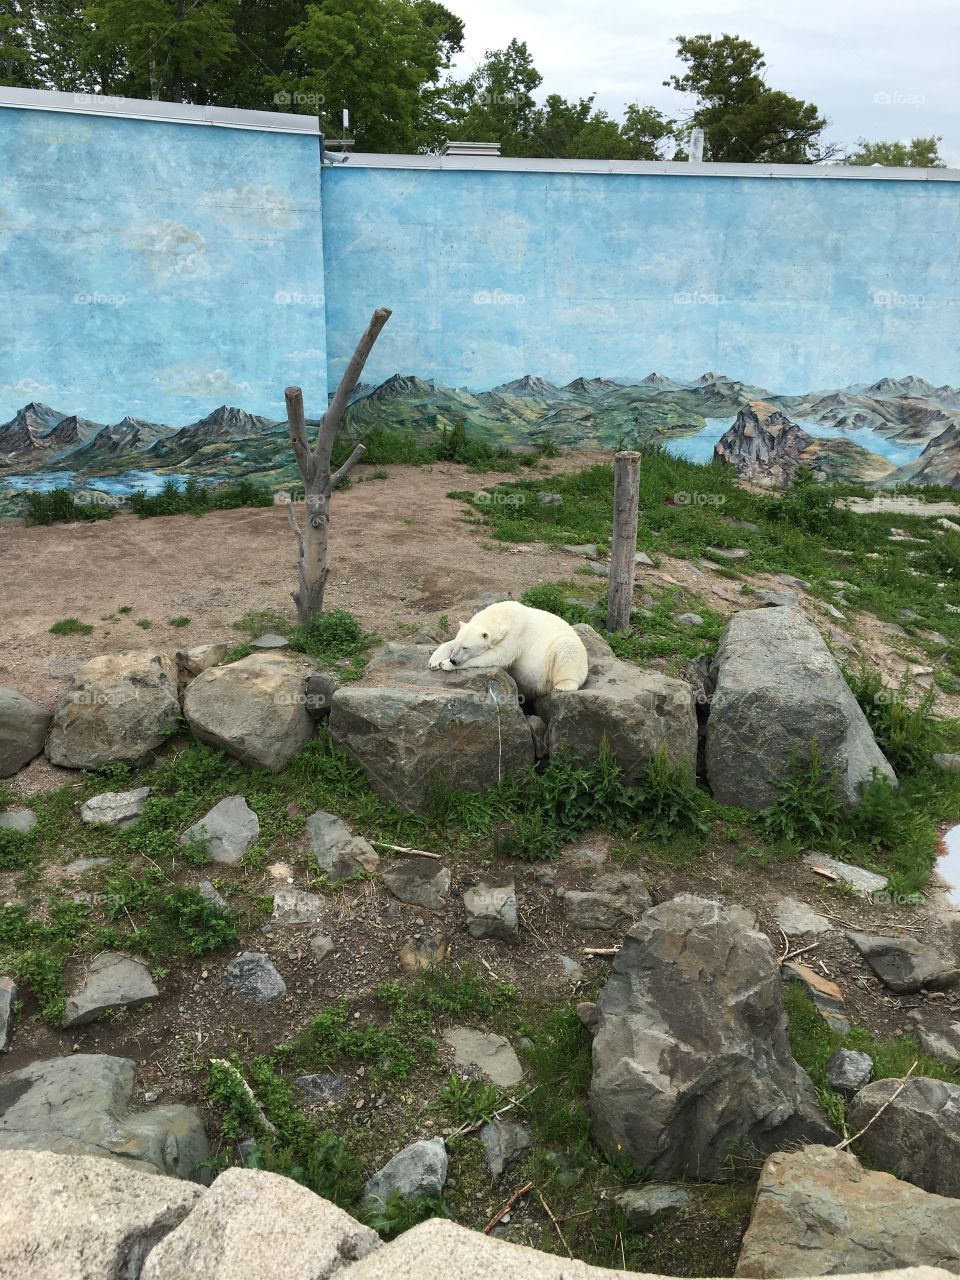 polar bear - Quebec City Aquarium - Quebec City, Canada